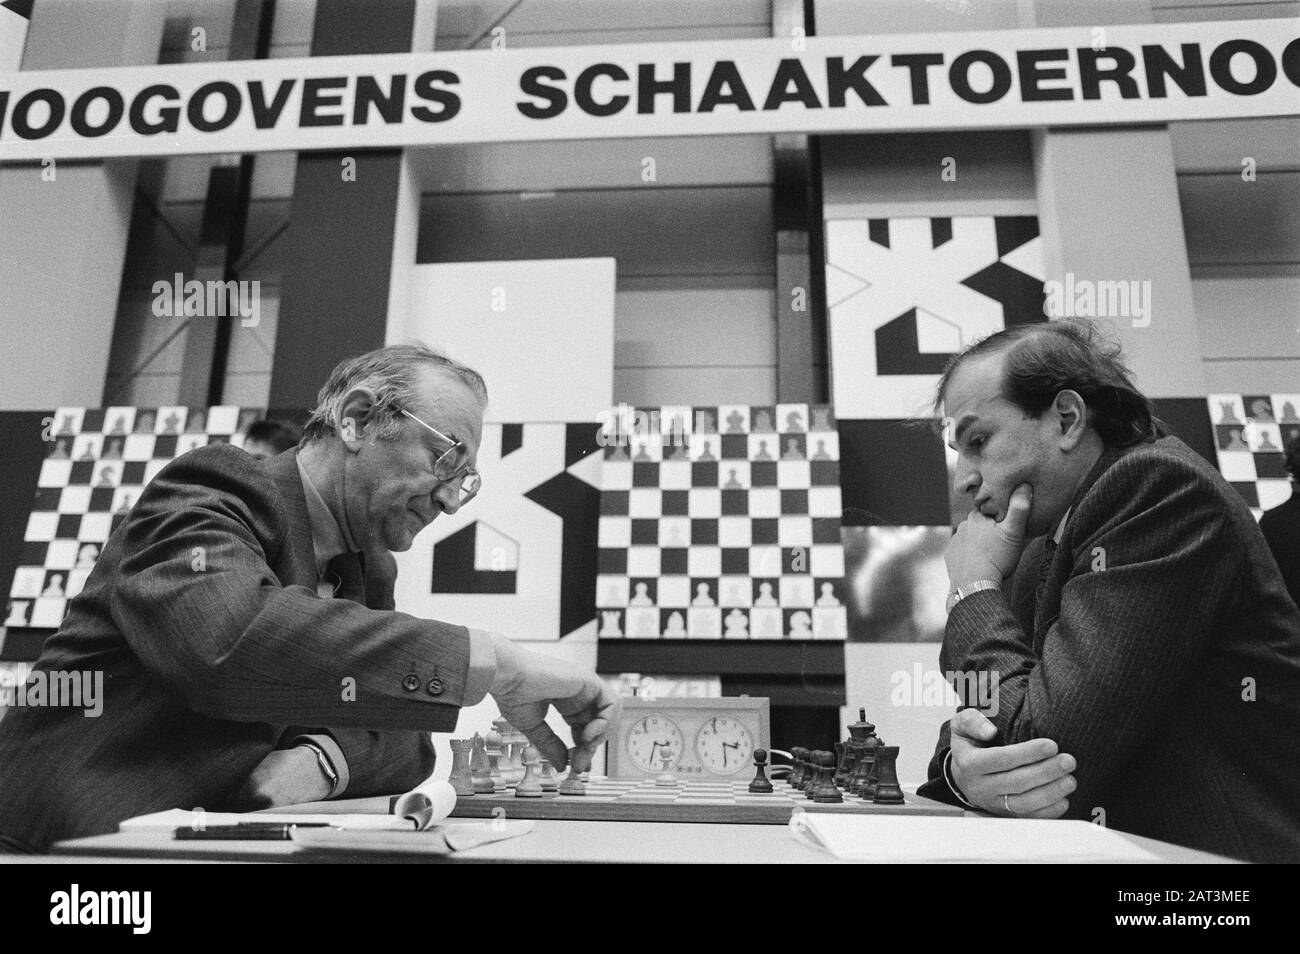 Korchnoi vs Kasparov 1982 #chess #kingshunt #Boardgames #FIDE #sports